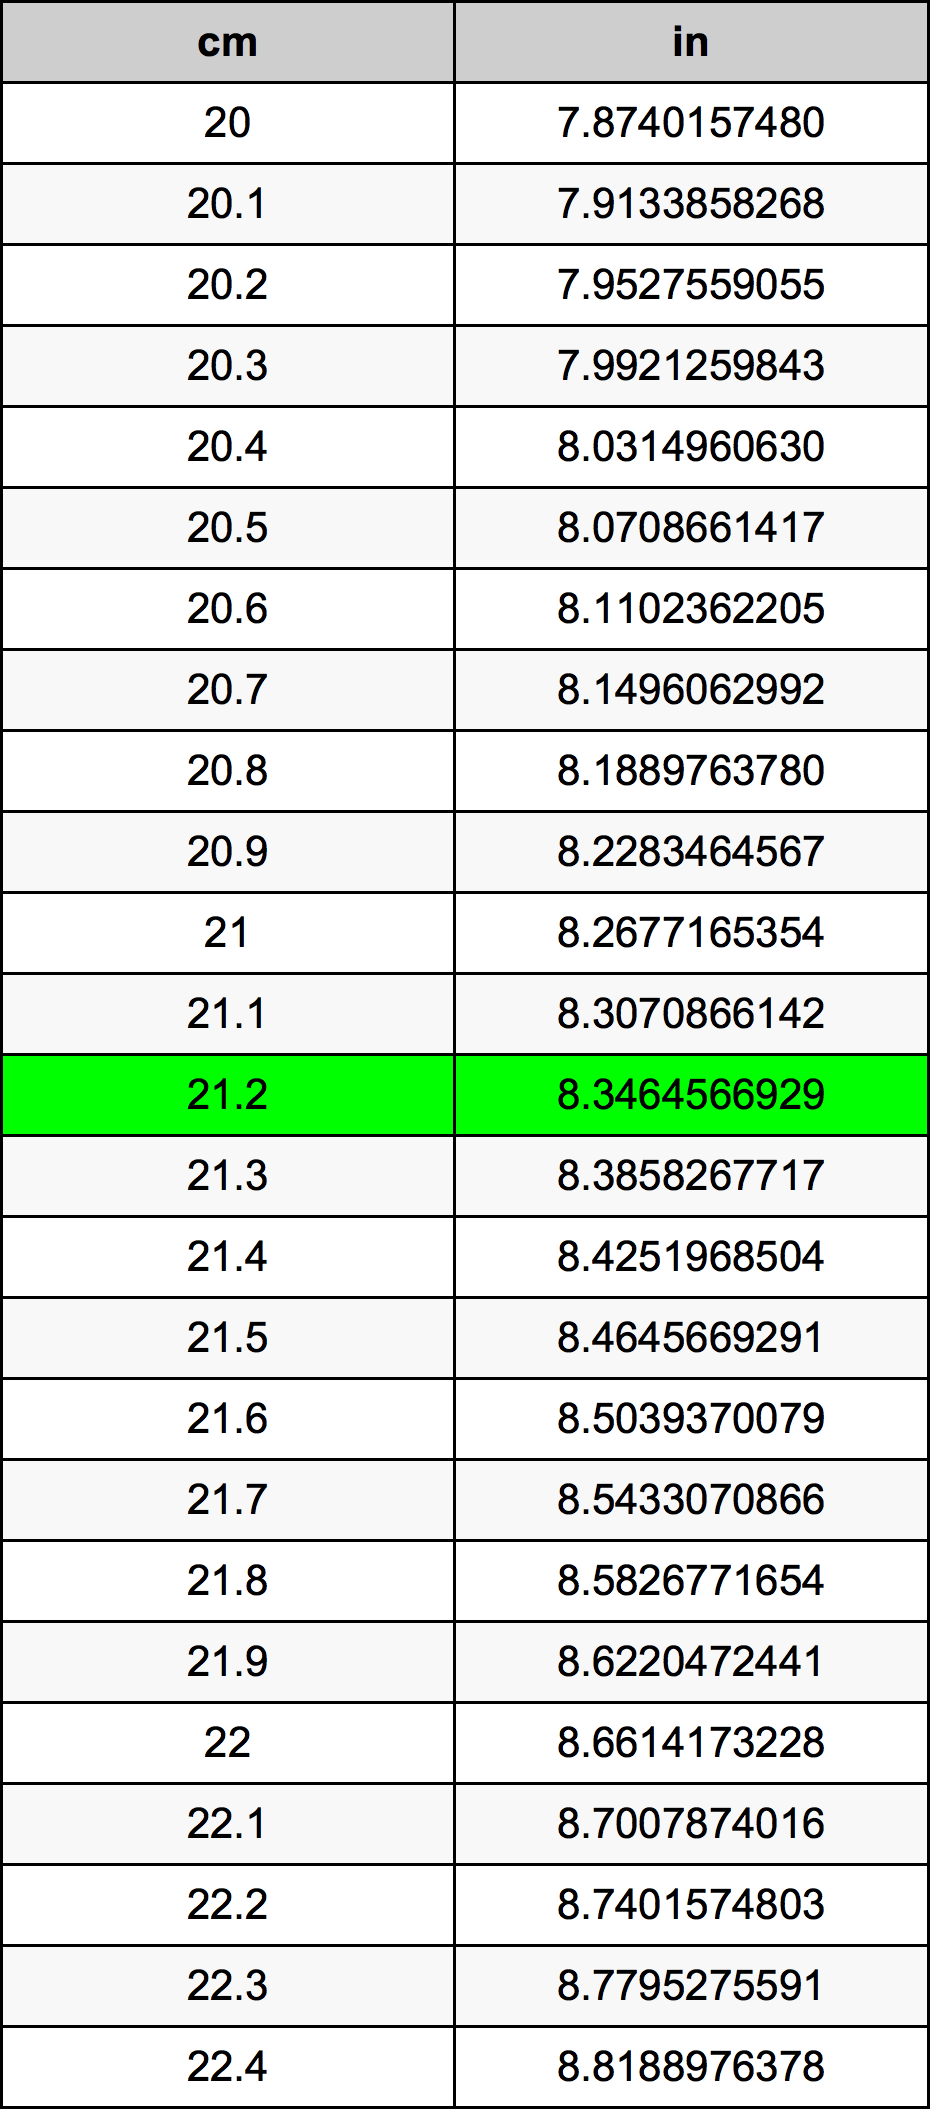 21.2 Centiméter átszámítási táblázat